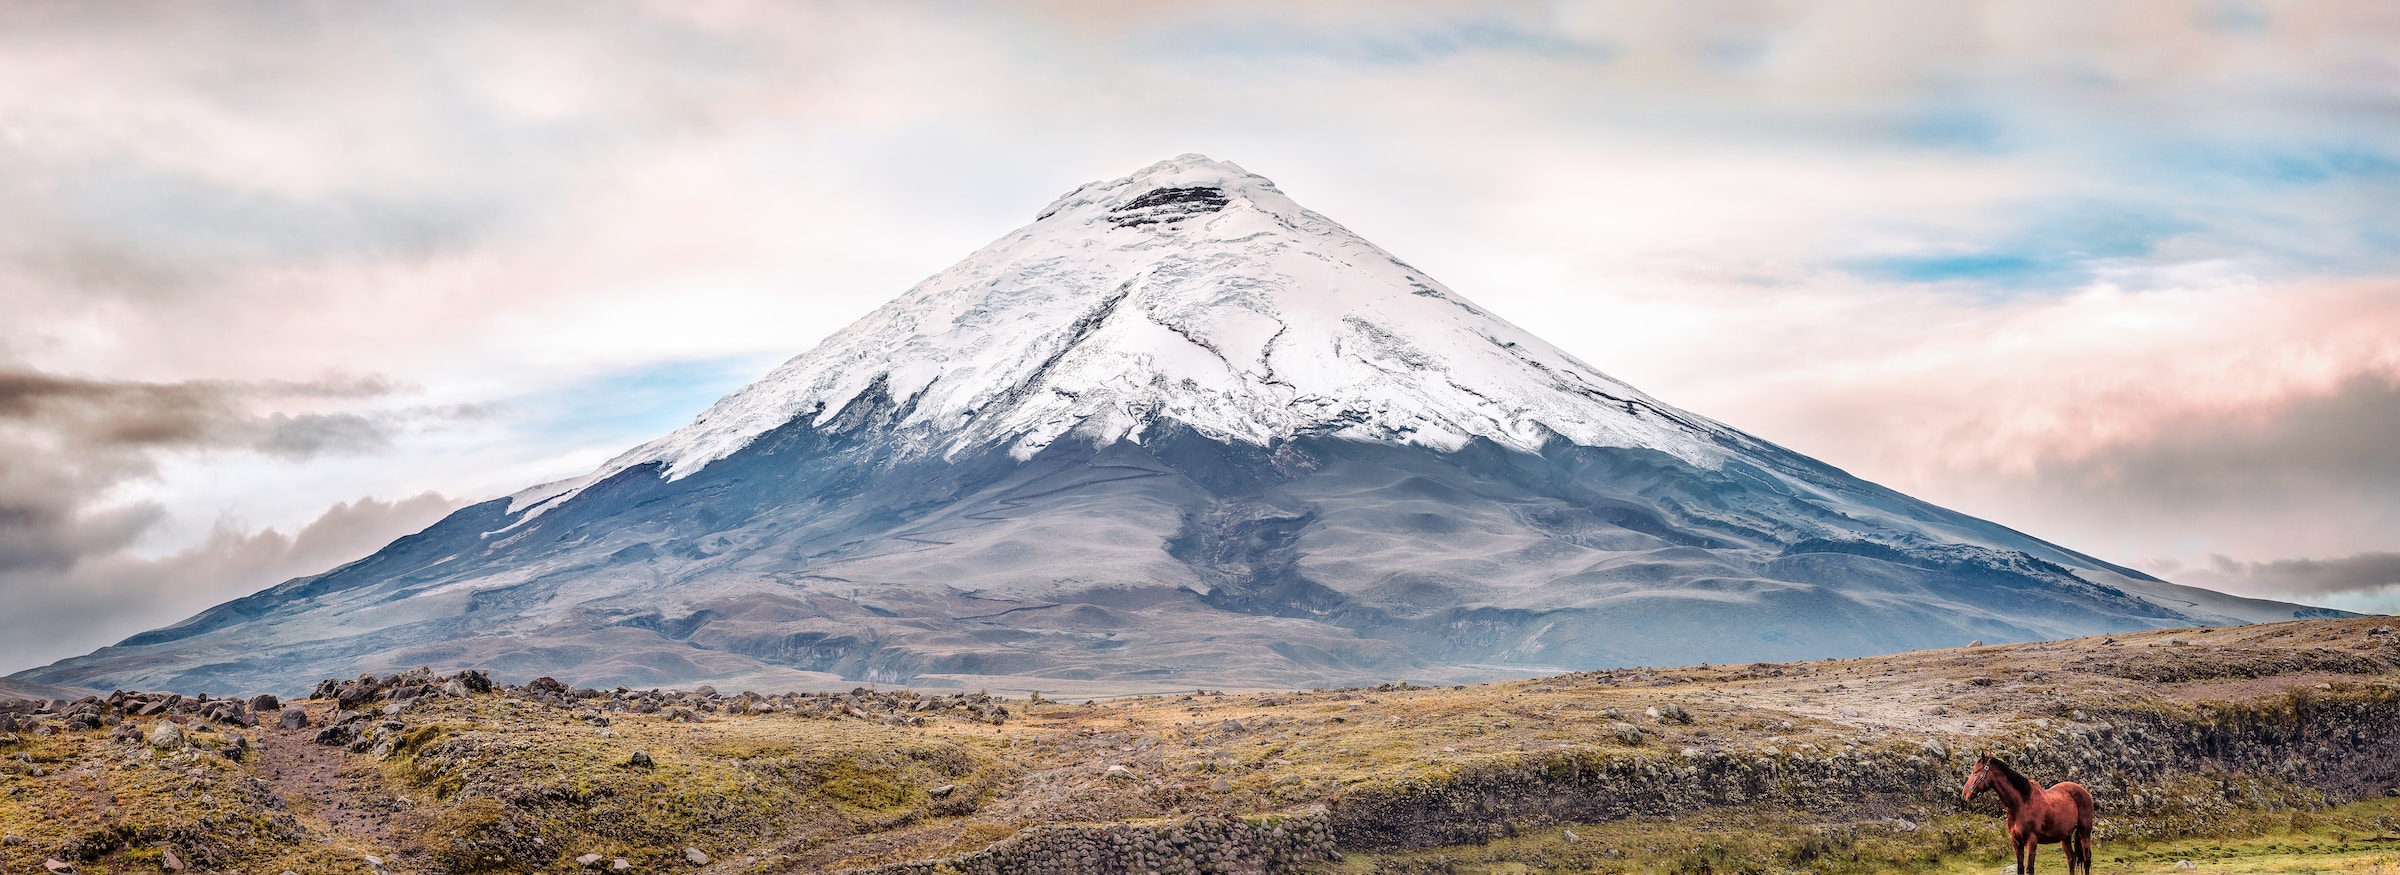 Cotopaxi volcano on your Trip to Ecuador